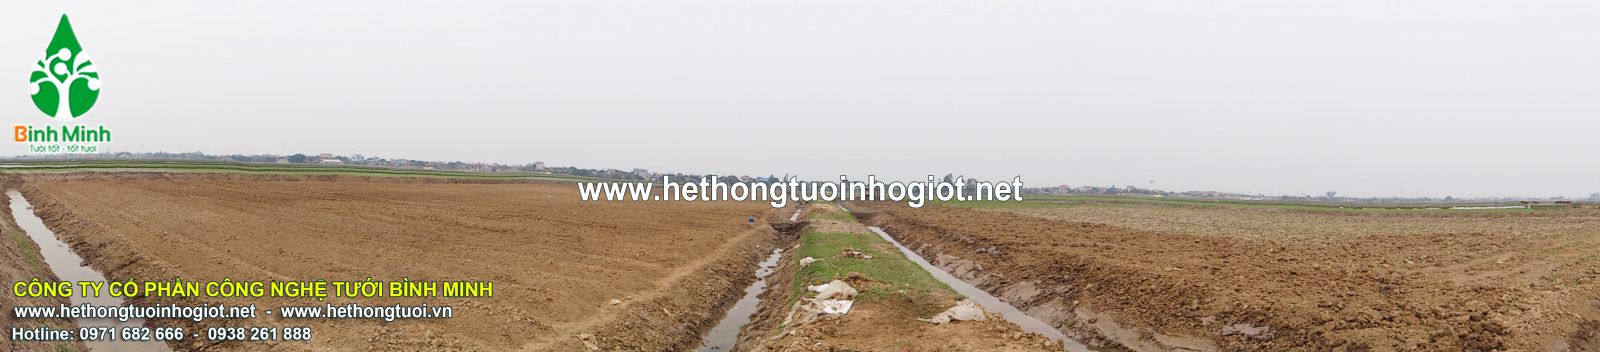 Dự án 5 ha cây nông nghiệp sở KHCN tỉnh Ninh Binh